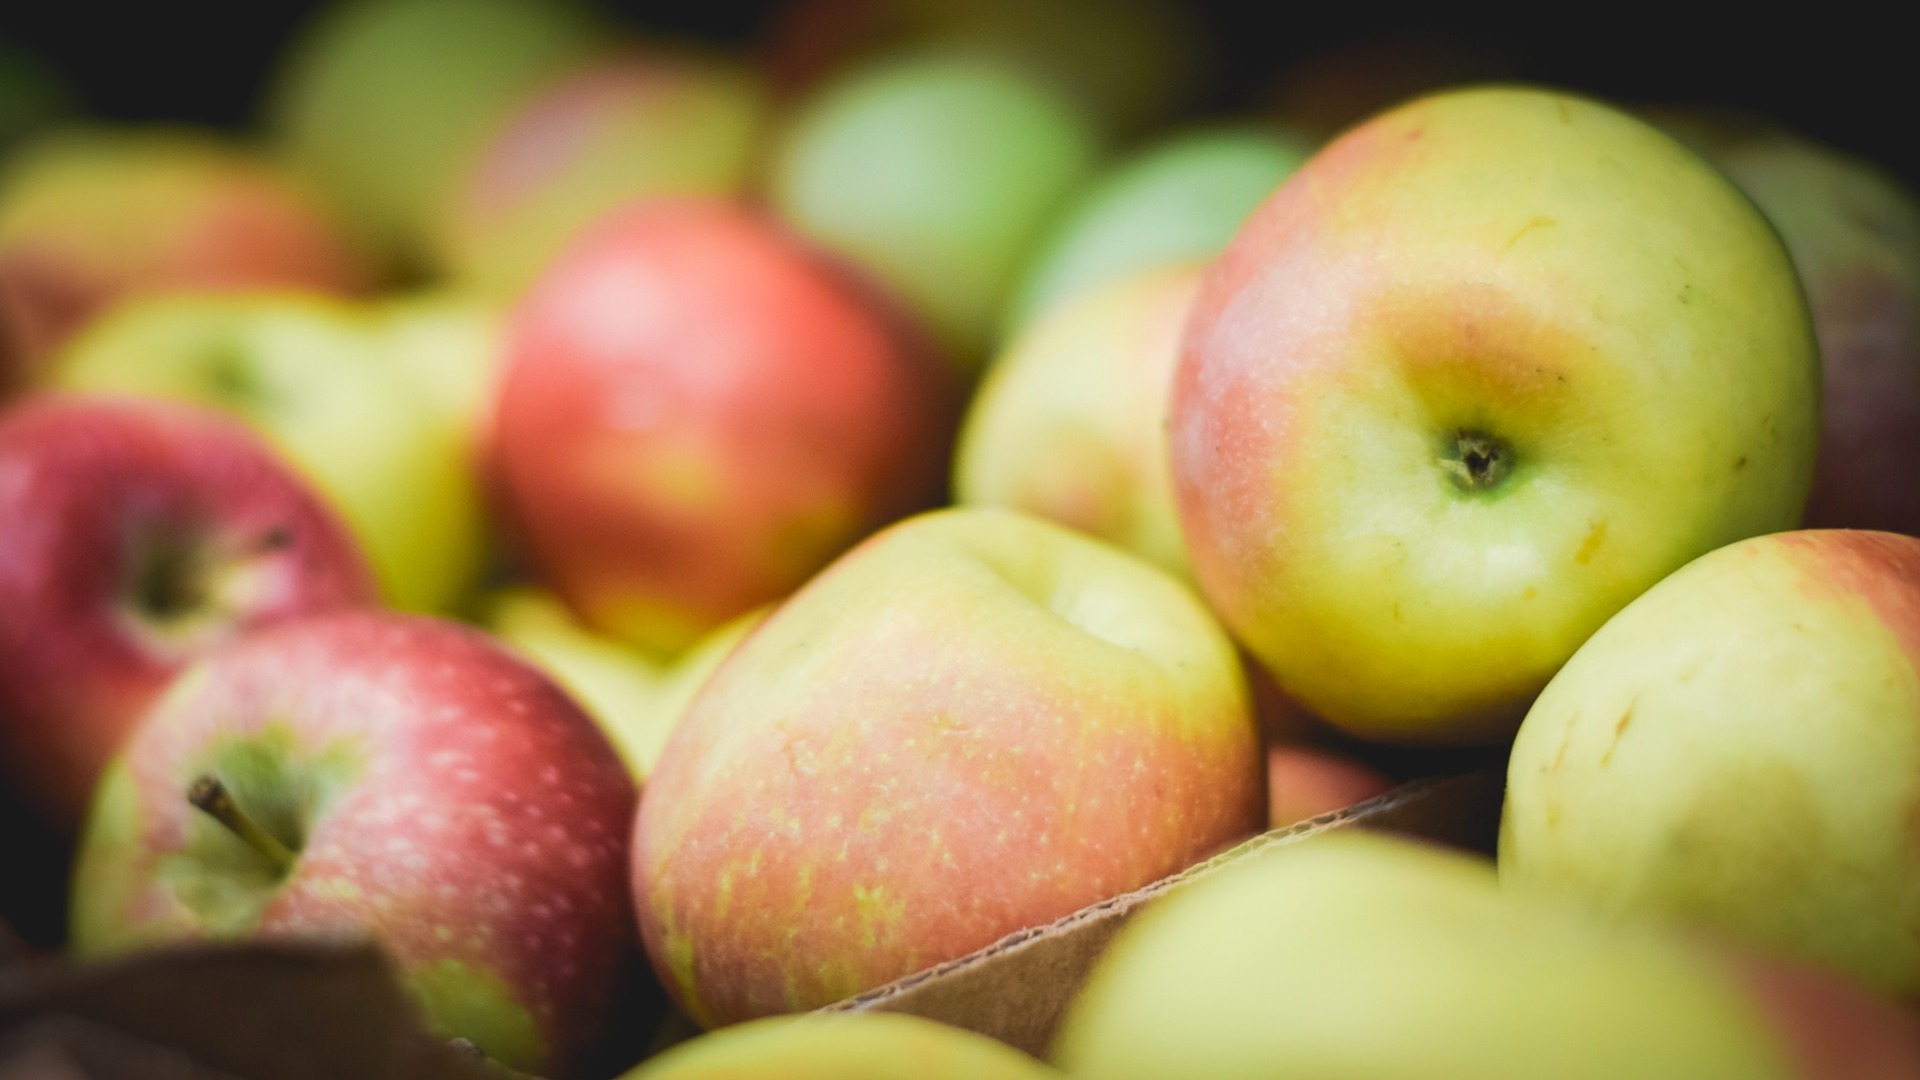 Работодатели заплатят тюменцам до 230 тысяч рублей за сбор яблок